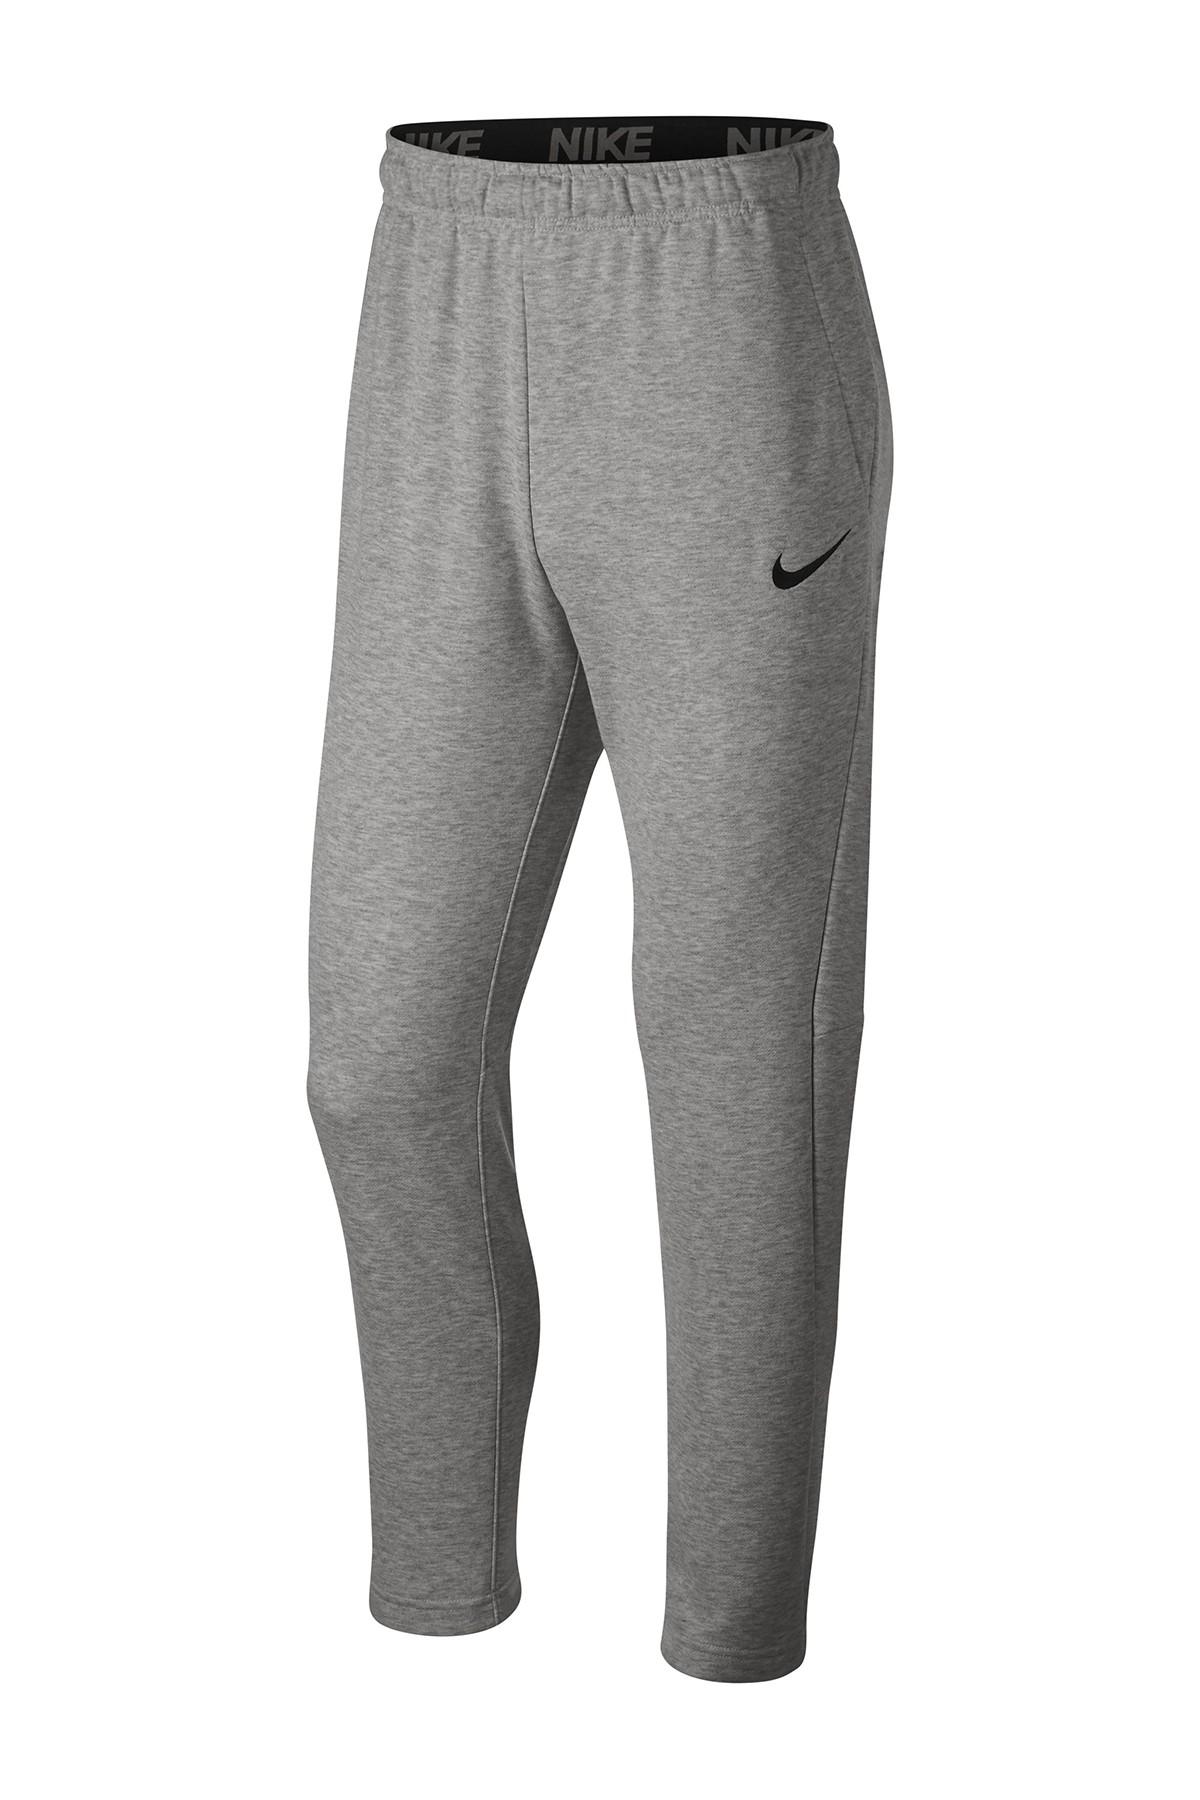 Nike Fleece Dri-fit Training Sweatpants in dk Grey Heather/Black (Gray ...